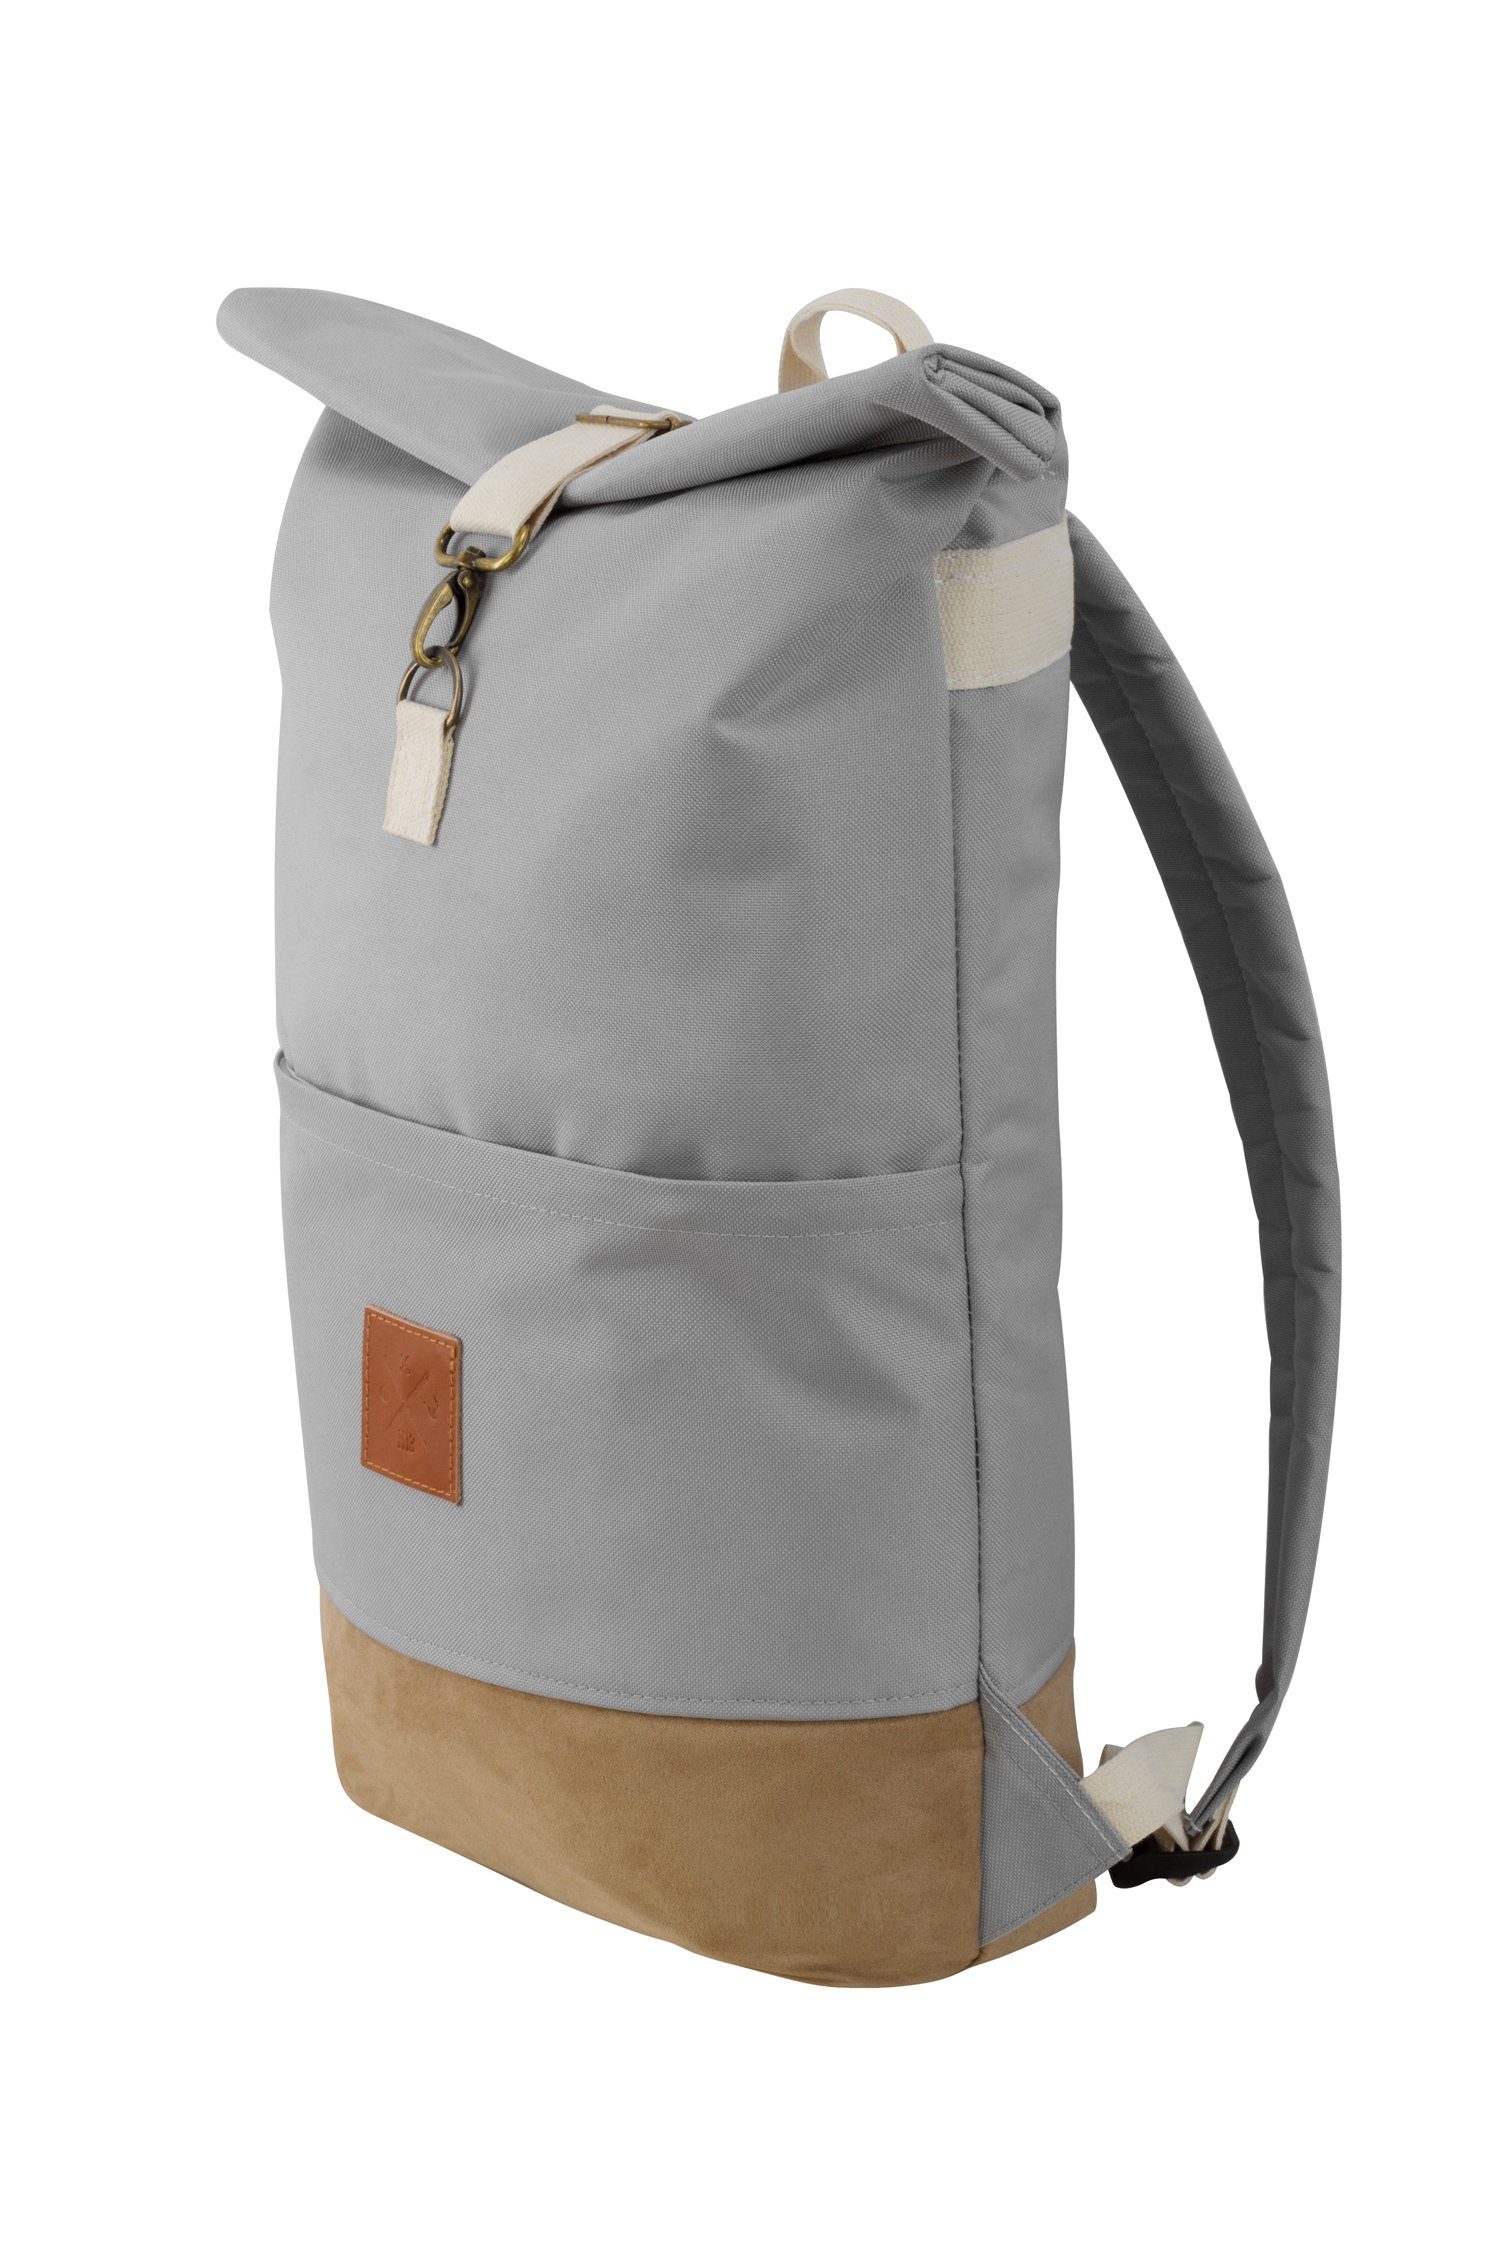 verstellbare Manufaktur13 Backpack - mit II Canvas Rollverschluss, wasserdicht/wasserabweisend, Roll-Top Wood Rucksack Tagesrucksack Gurte